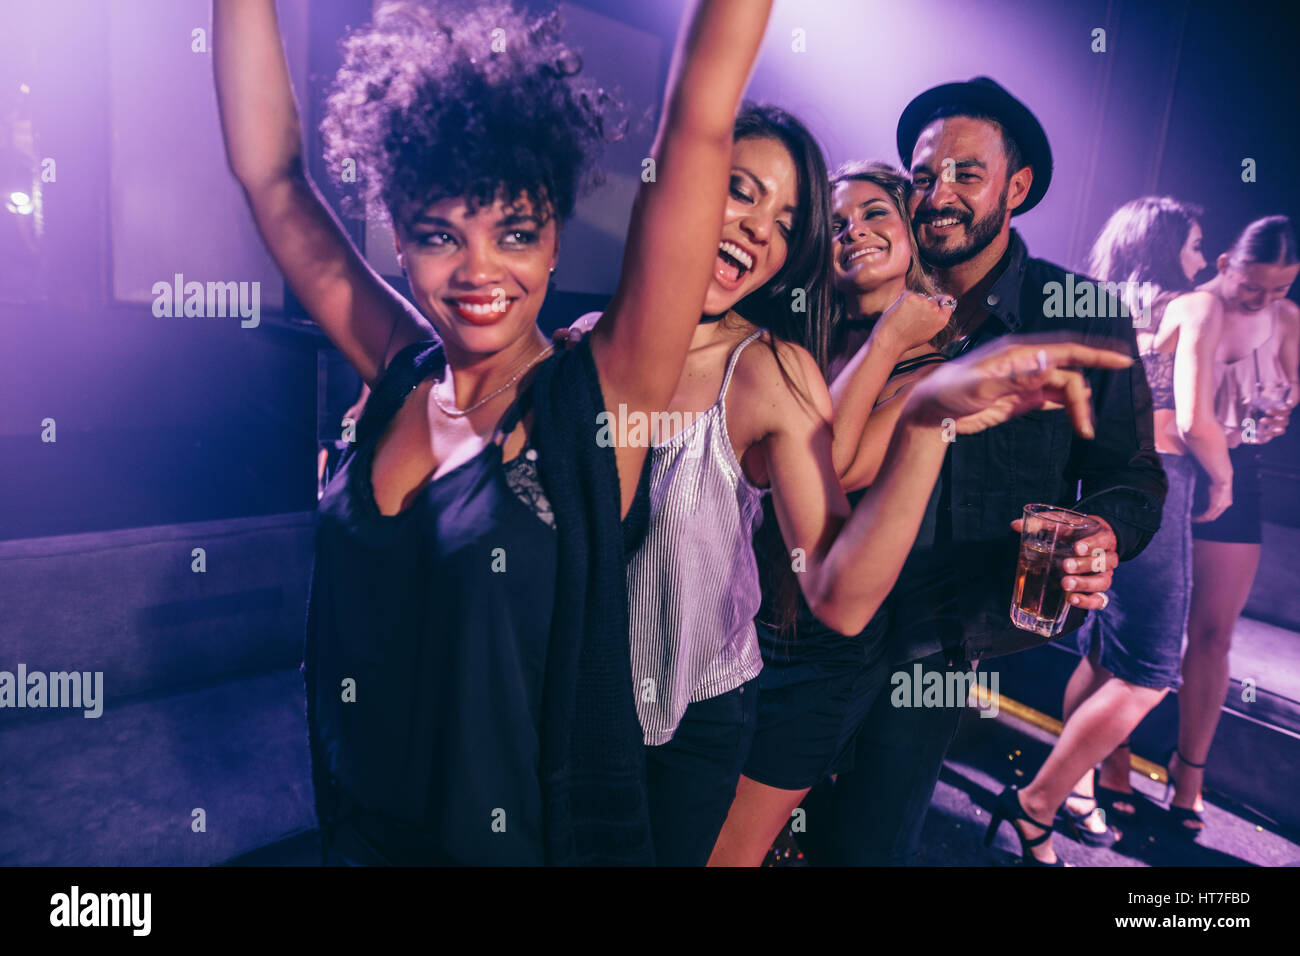 Group of friends dancing in night club. Young men and women having fun ...